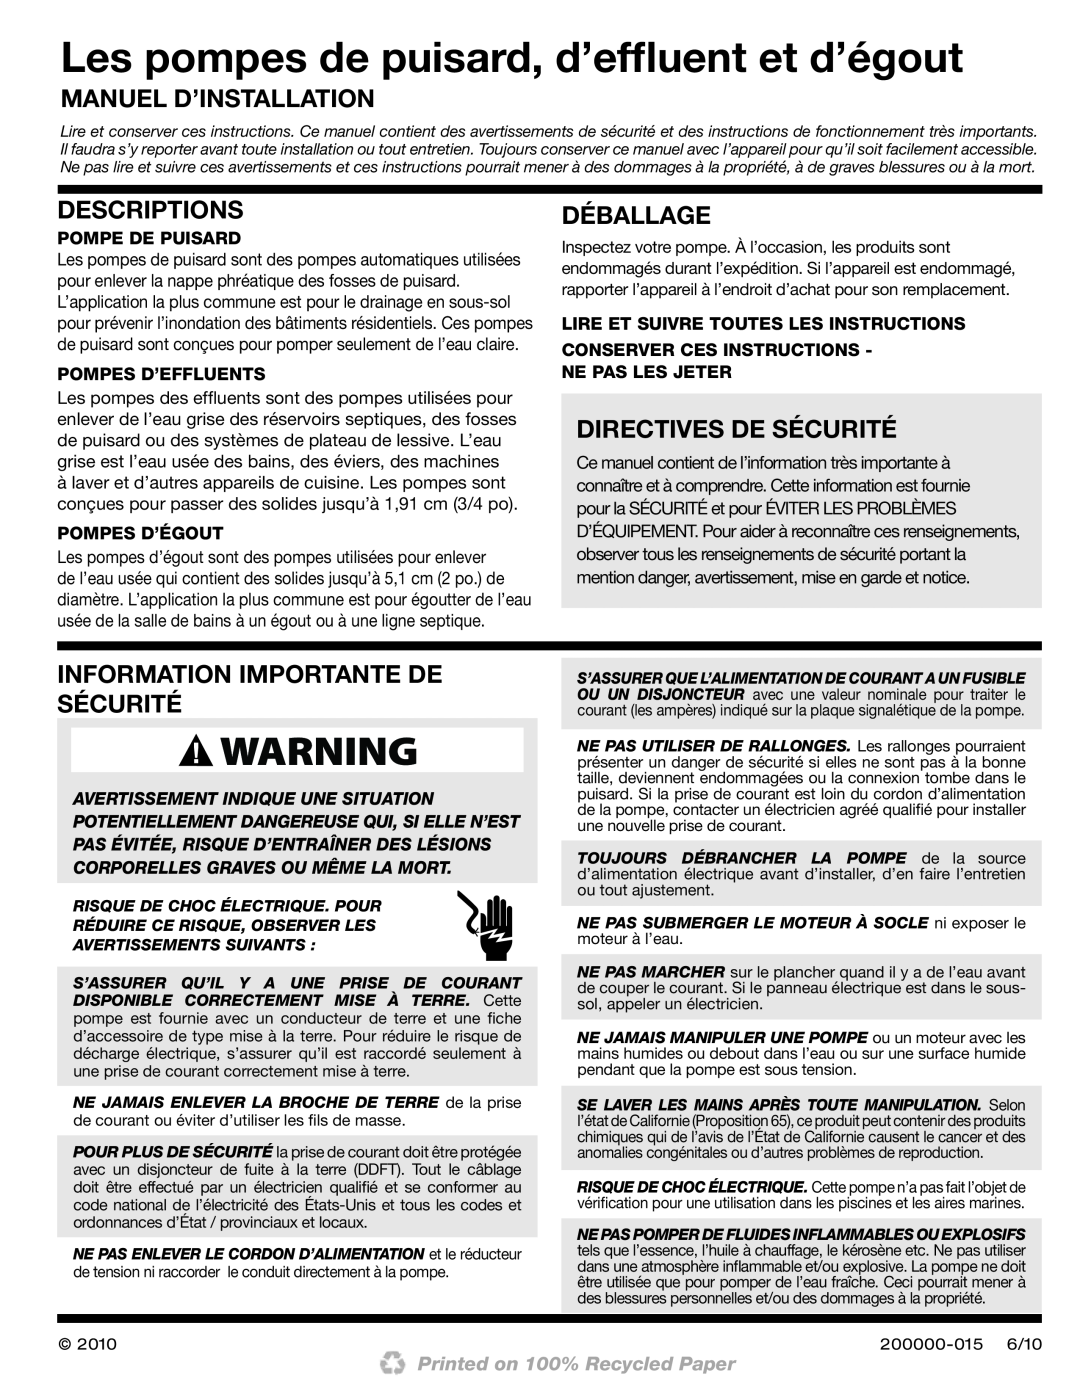 Wayne 200000-015 Les pompes de puisard, d’efﬂuent et d’égout, Manuel D’Installation, Déballage, Directives De Sécurité 